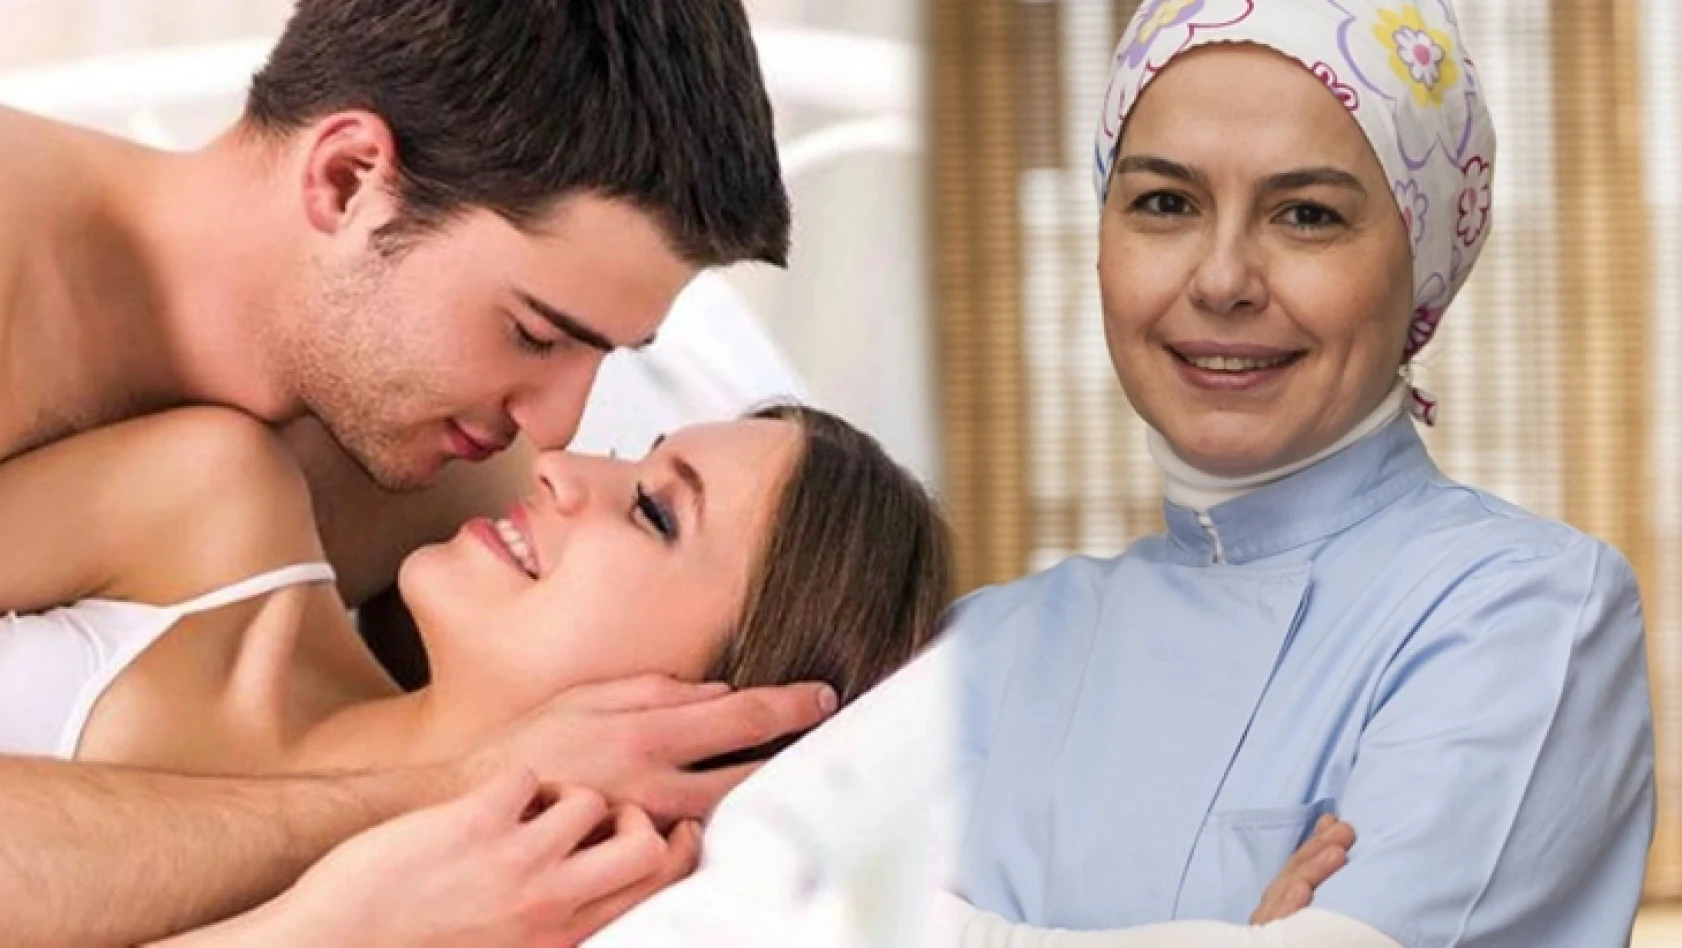 Sevişmenin faydalarını anlatan doktor Ayşe Duman, sosyal medyada viral oldu